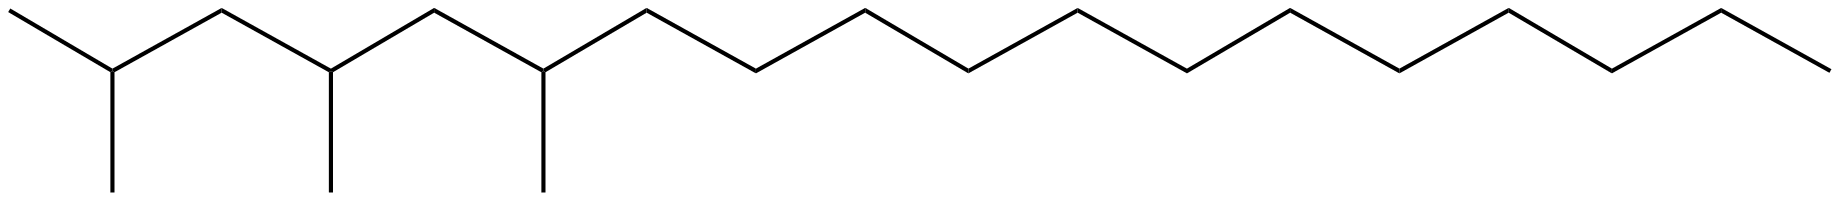 Image of octadecane, 2,4,6-trimethyl-